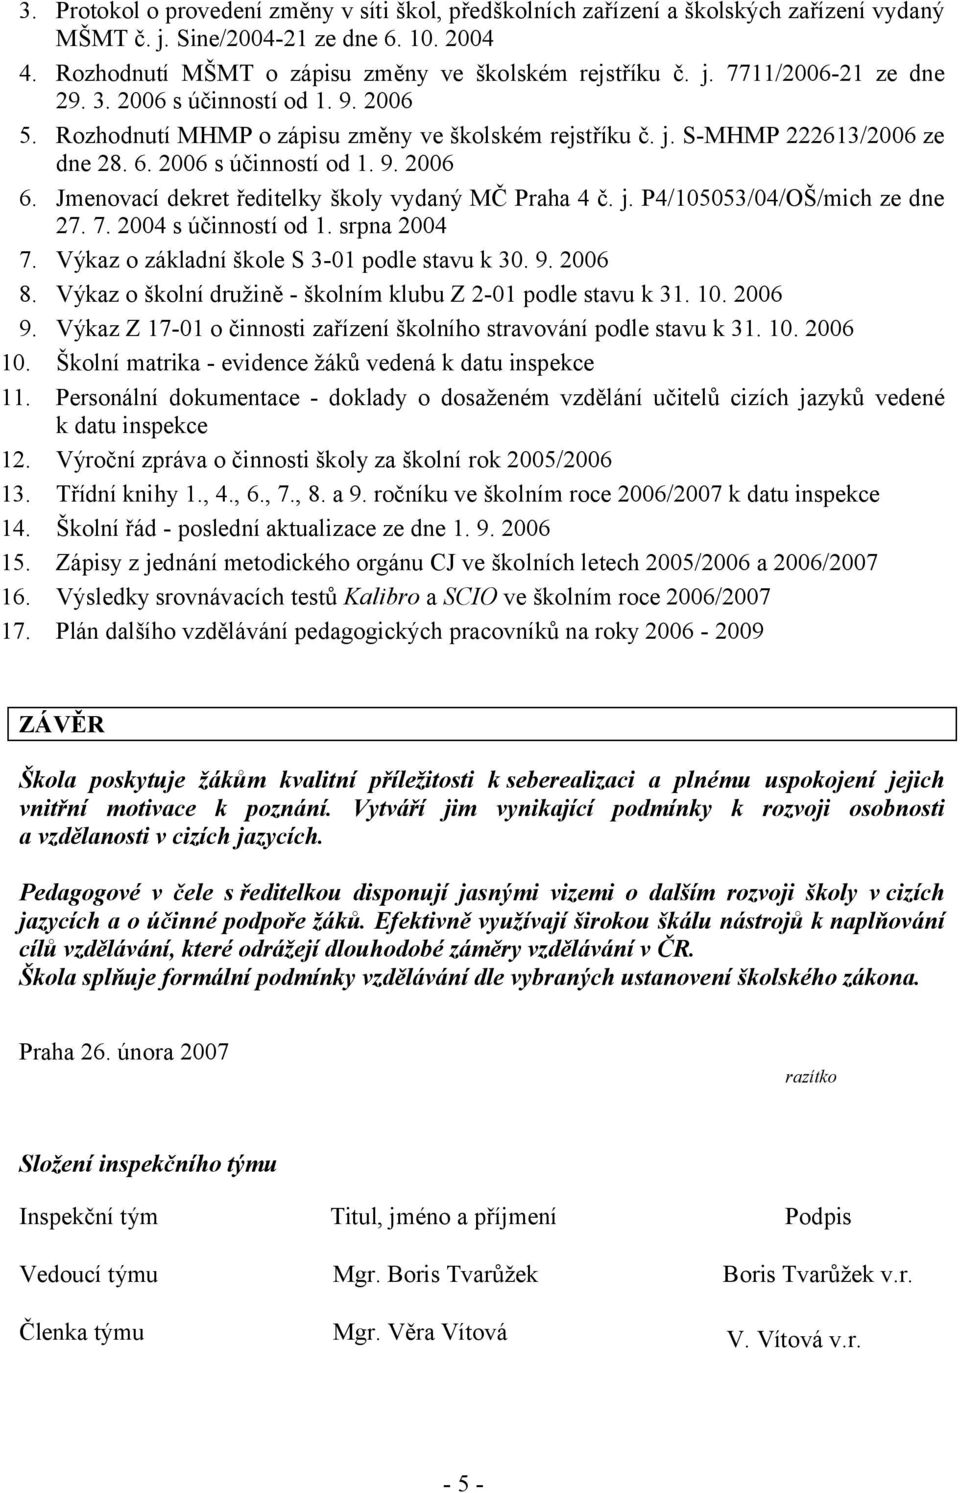 Jmenovací dekret ředitelky školy vydaný MČ Praha 4 č. j. P4/105053/04/OŠ/mich ze dne 27. 7. 2004 s účinností od 1. srpna 2004 7. Výkaz o základní škole S 3-01 podle stavu k 30. 9. 2006 8.